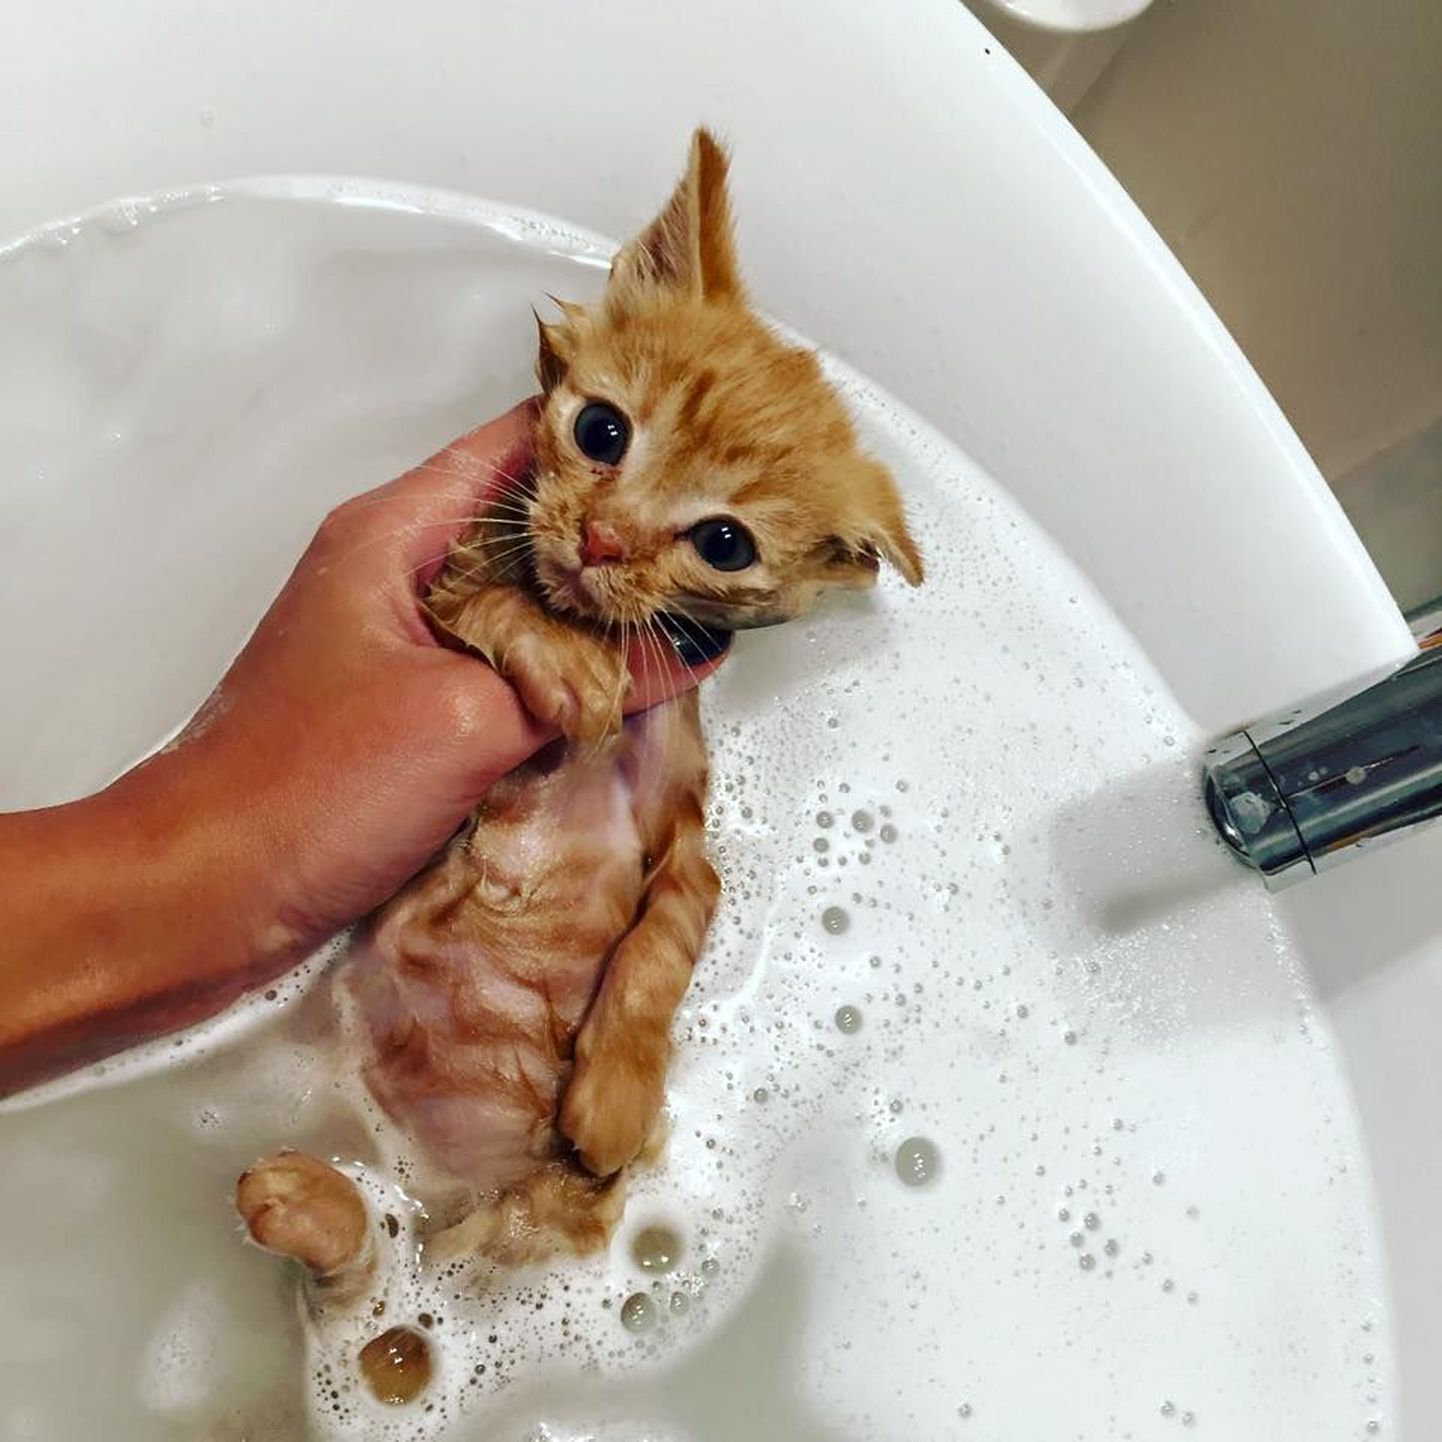 Garfield on puhtaks pestud ja valmis koju minema!